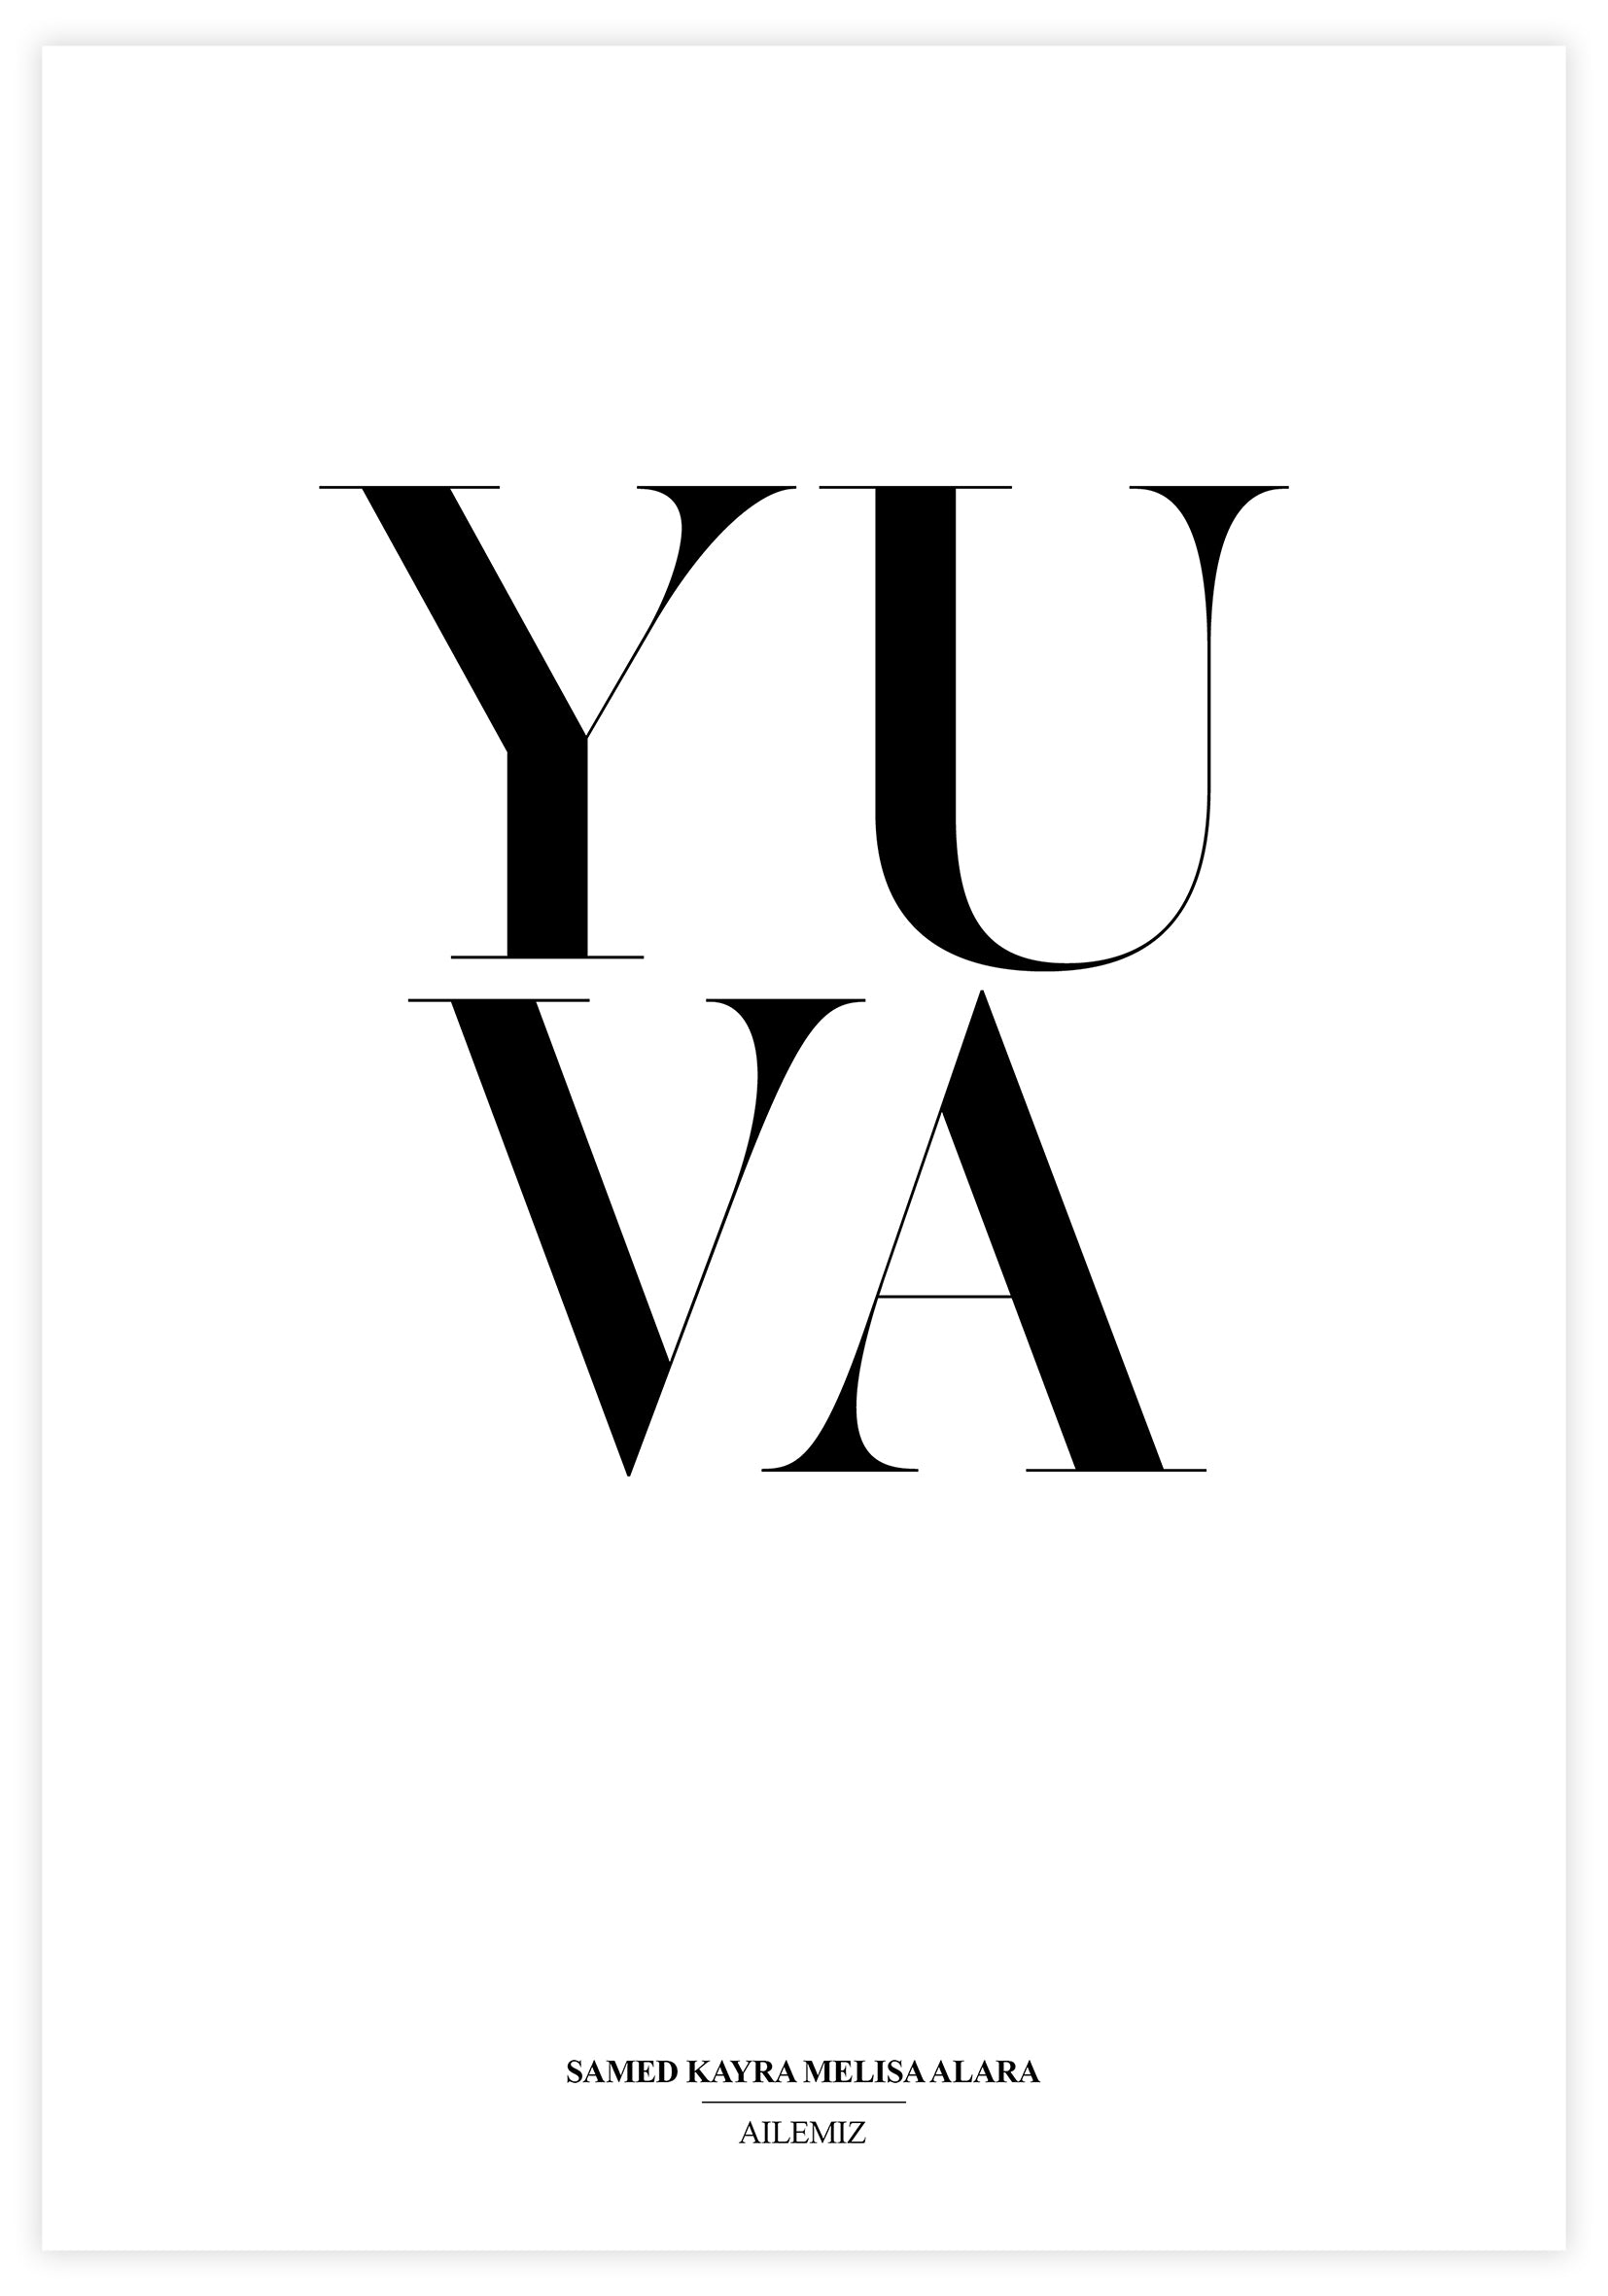 Yuva Poster